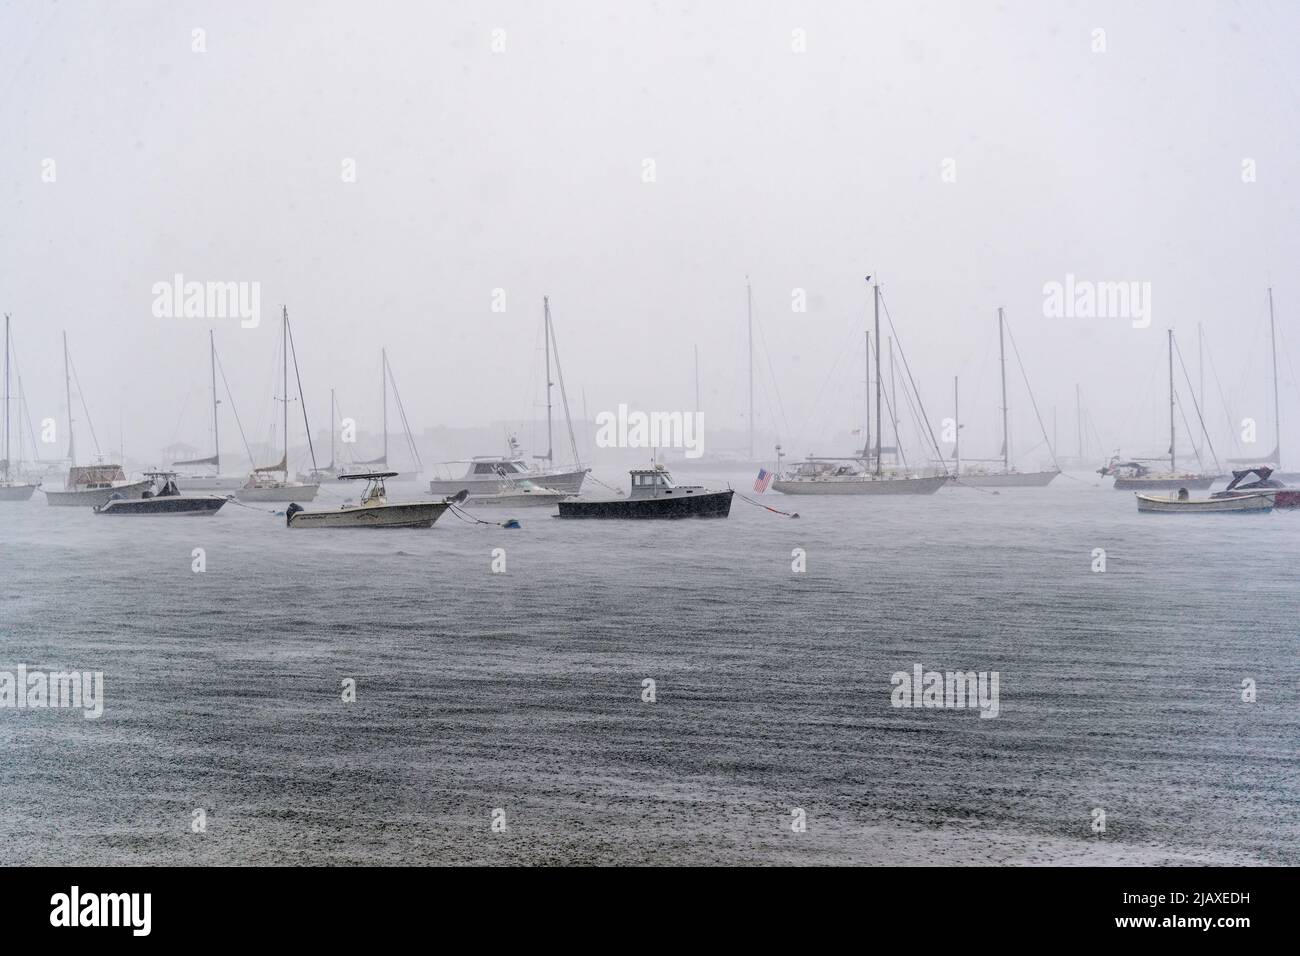 Stock de photos de la tempête tropicale Elsa de 2021 draching Newport, Rhode Island. Bateaux amarrés dans une tempête de l'île Aquidneck. Banque D'Images